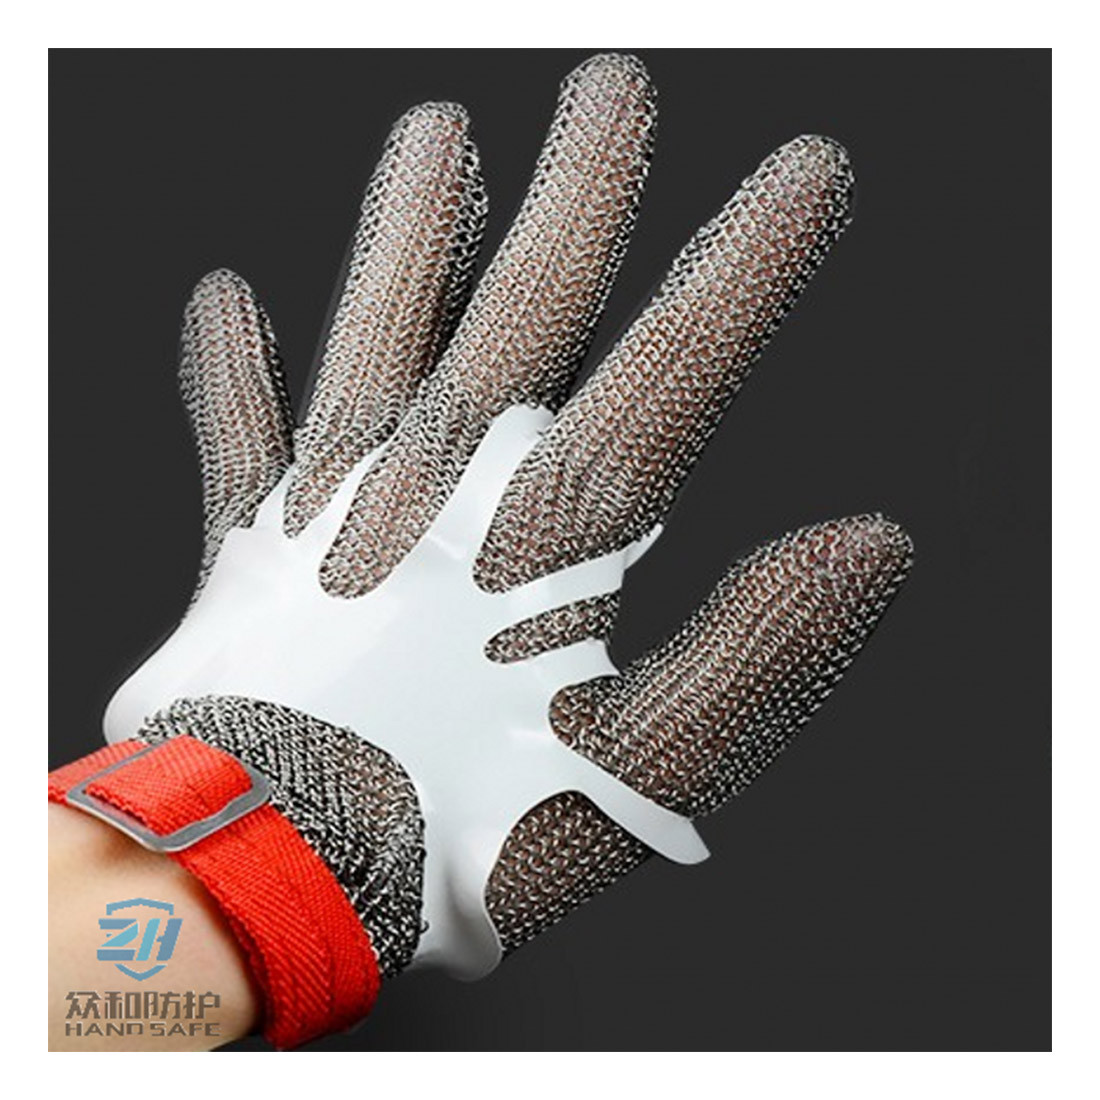 Tendeur de gants - Les équipements de protection individuelle